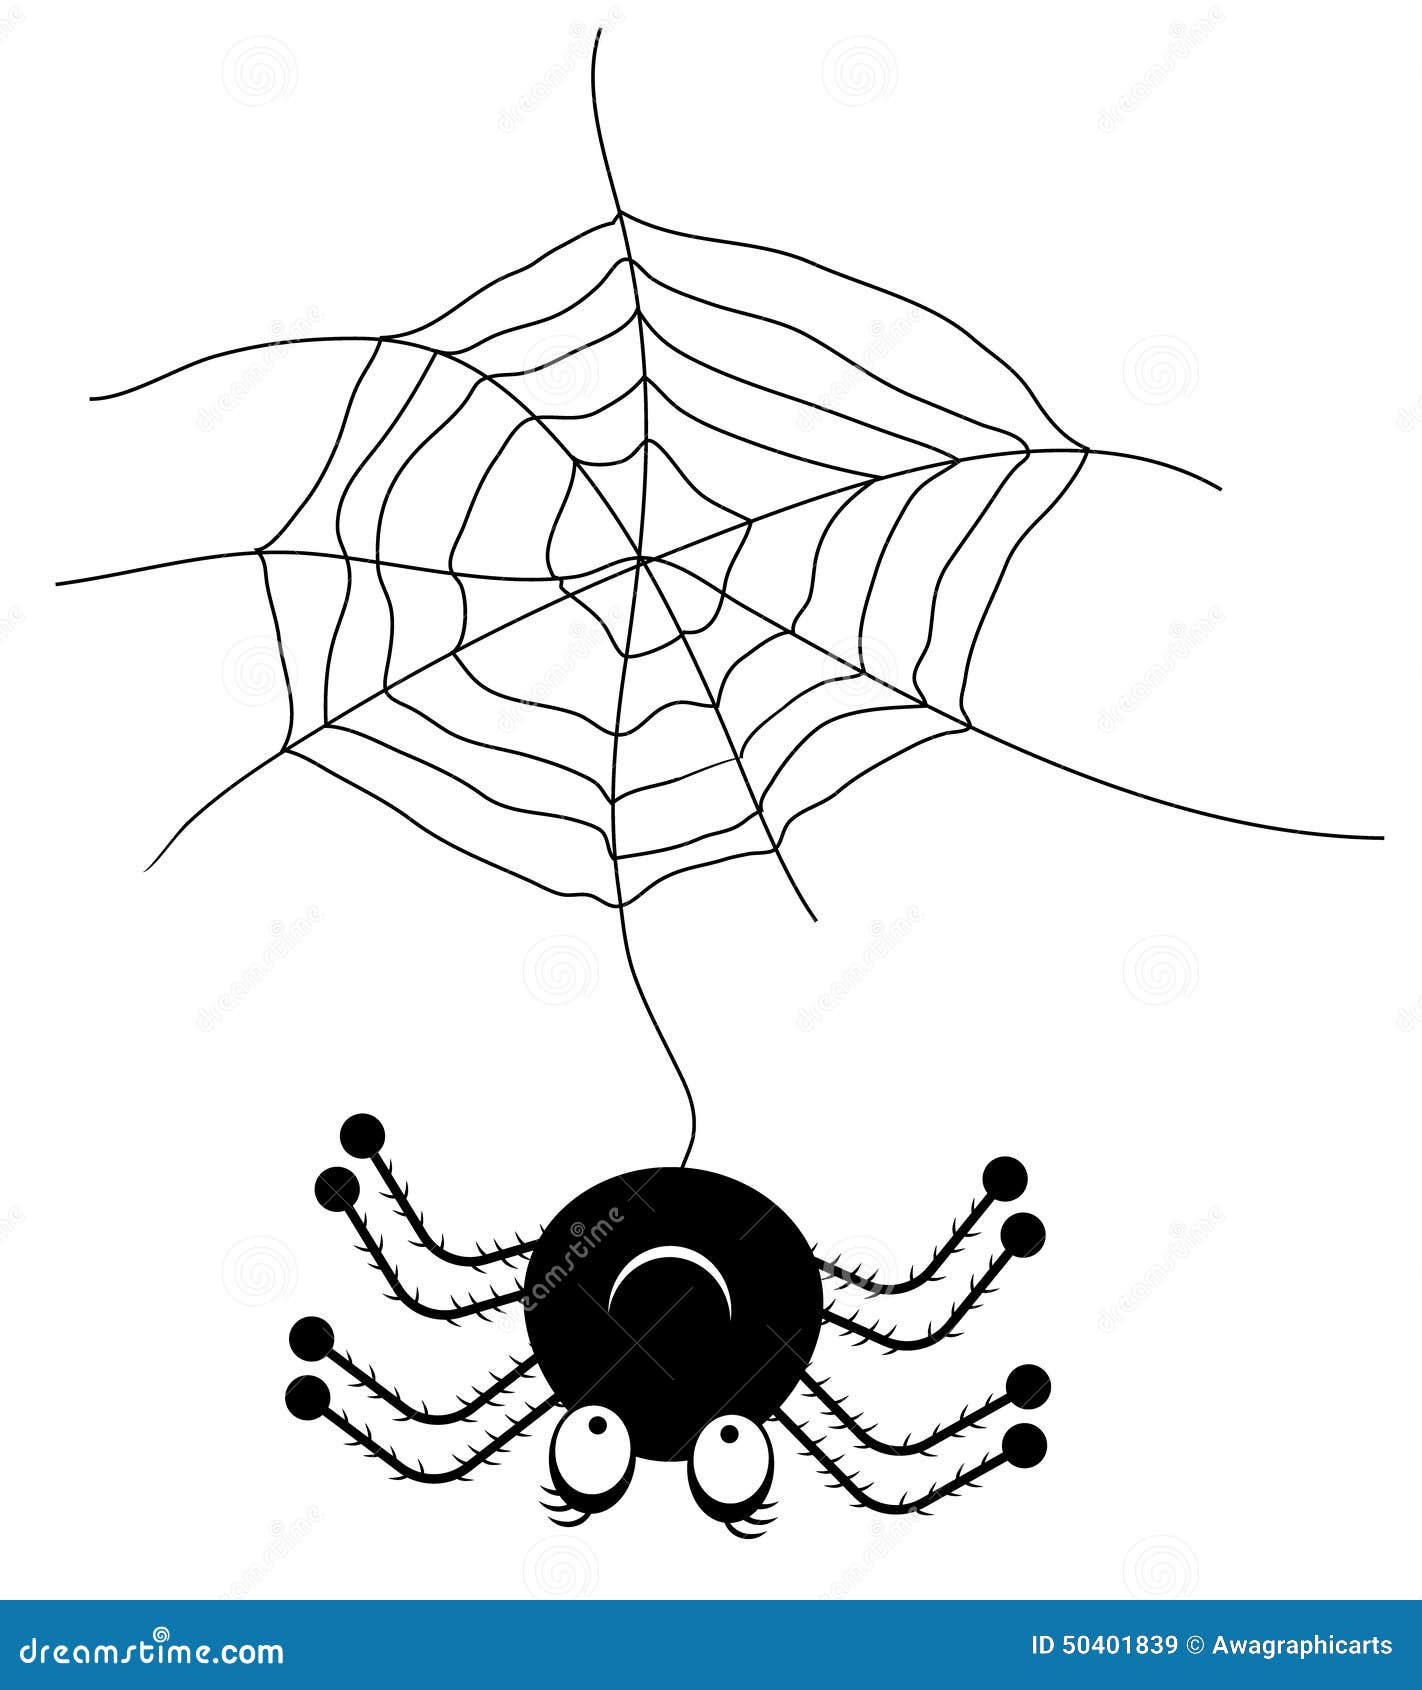 schwarze spinne mit spinnennetz vektor abbildung